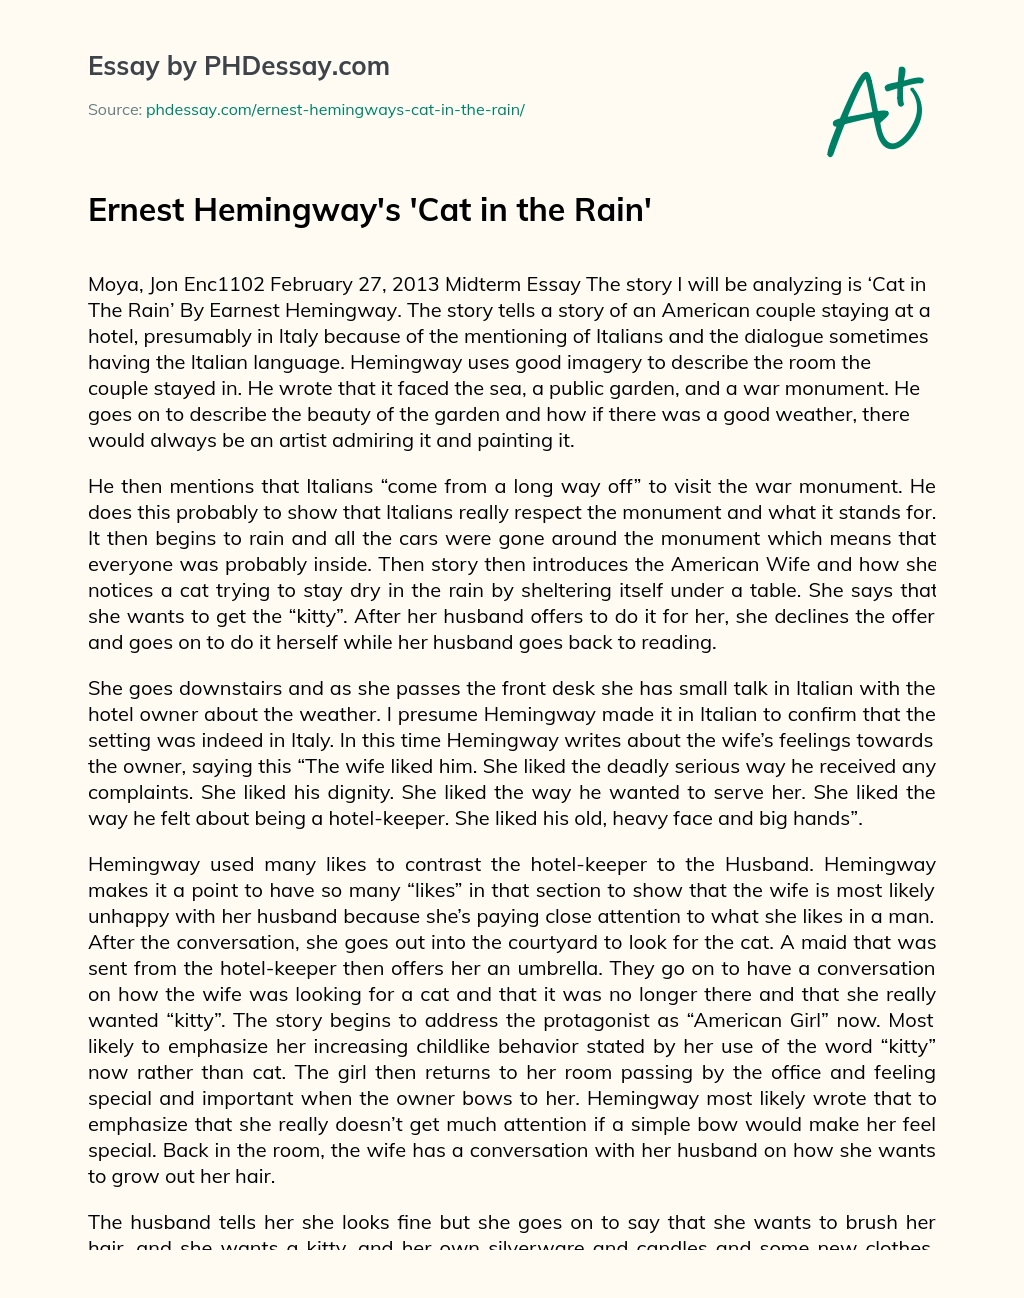 Ernest Hemingway’s ‘Cat in the Rain’ essay